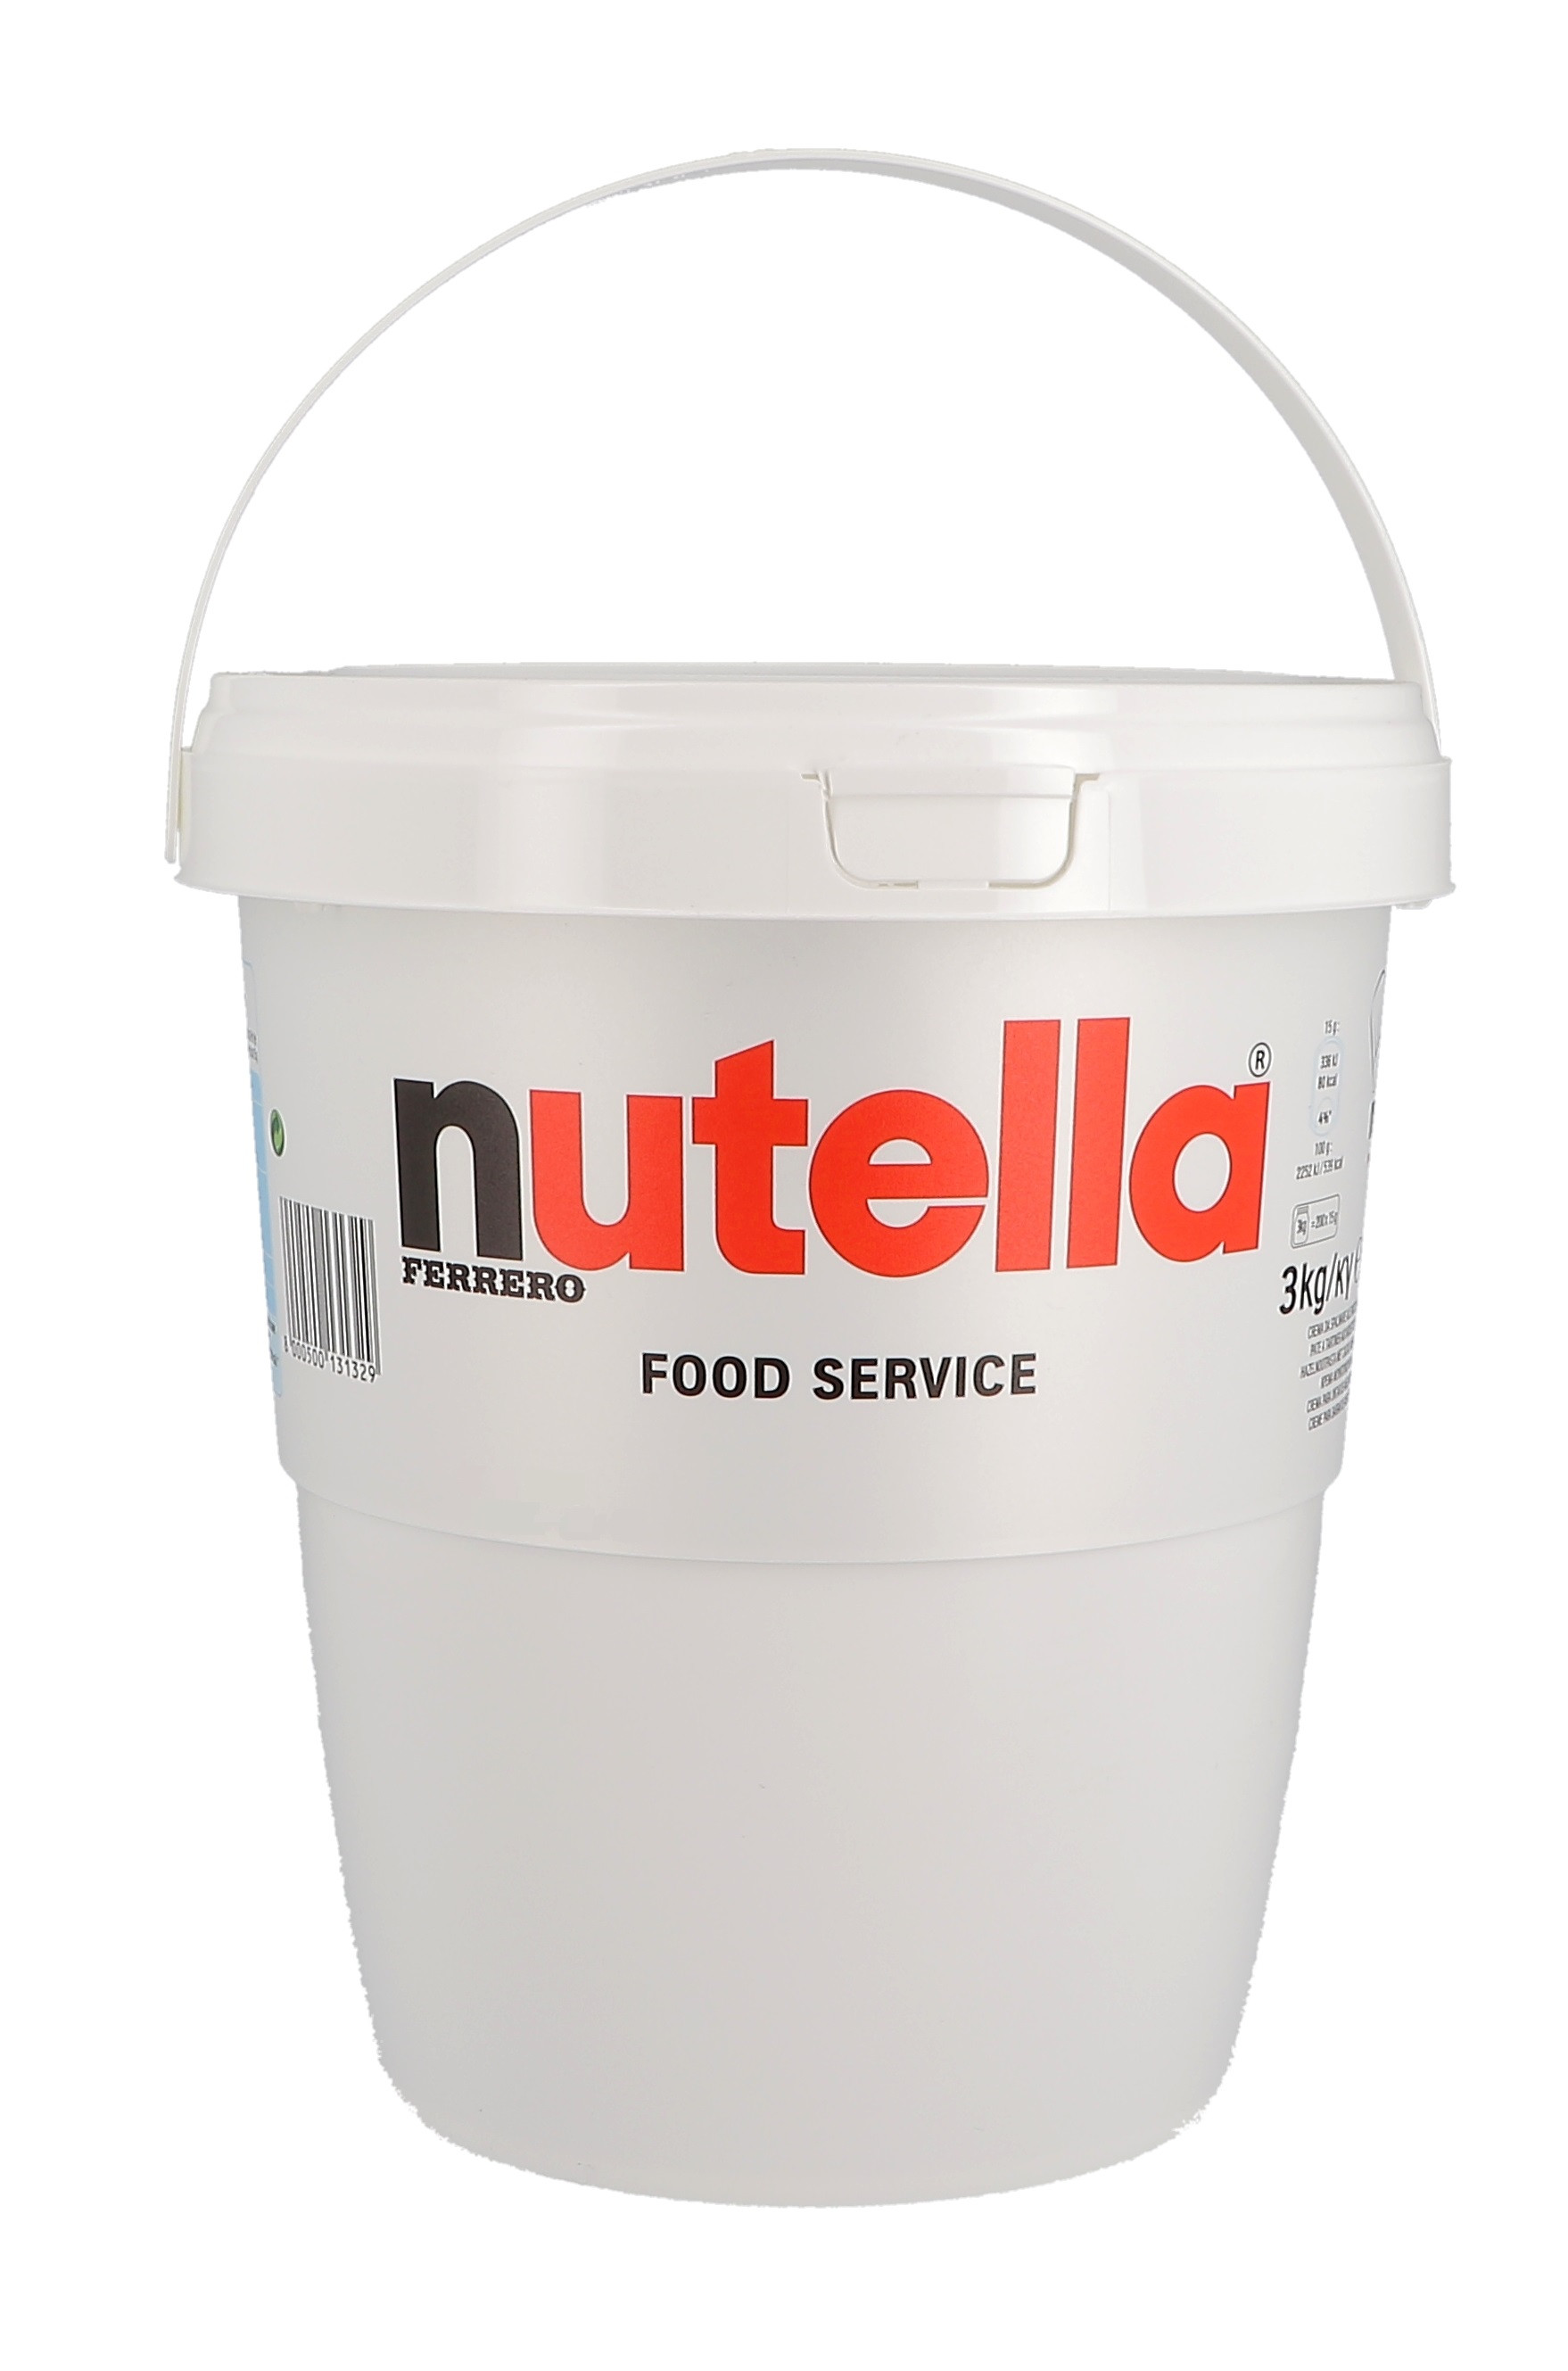 Nutella Hazelnut Spread XL Ferrero 3kg jar - Nevejan | Billiger Montag